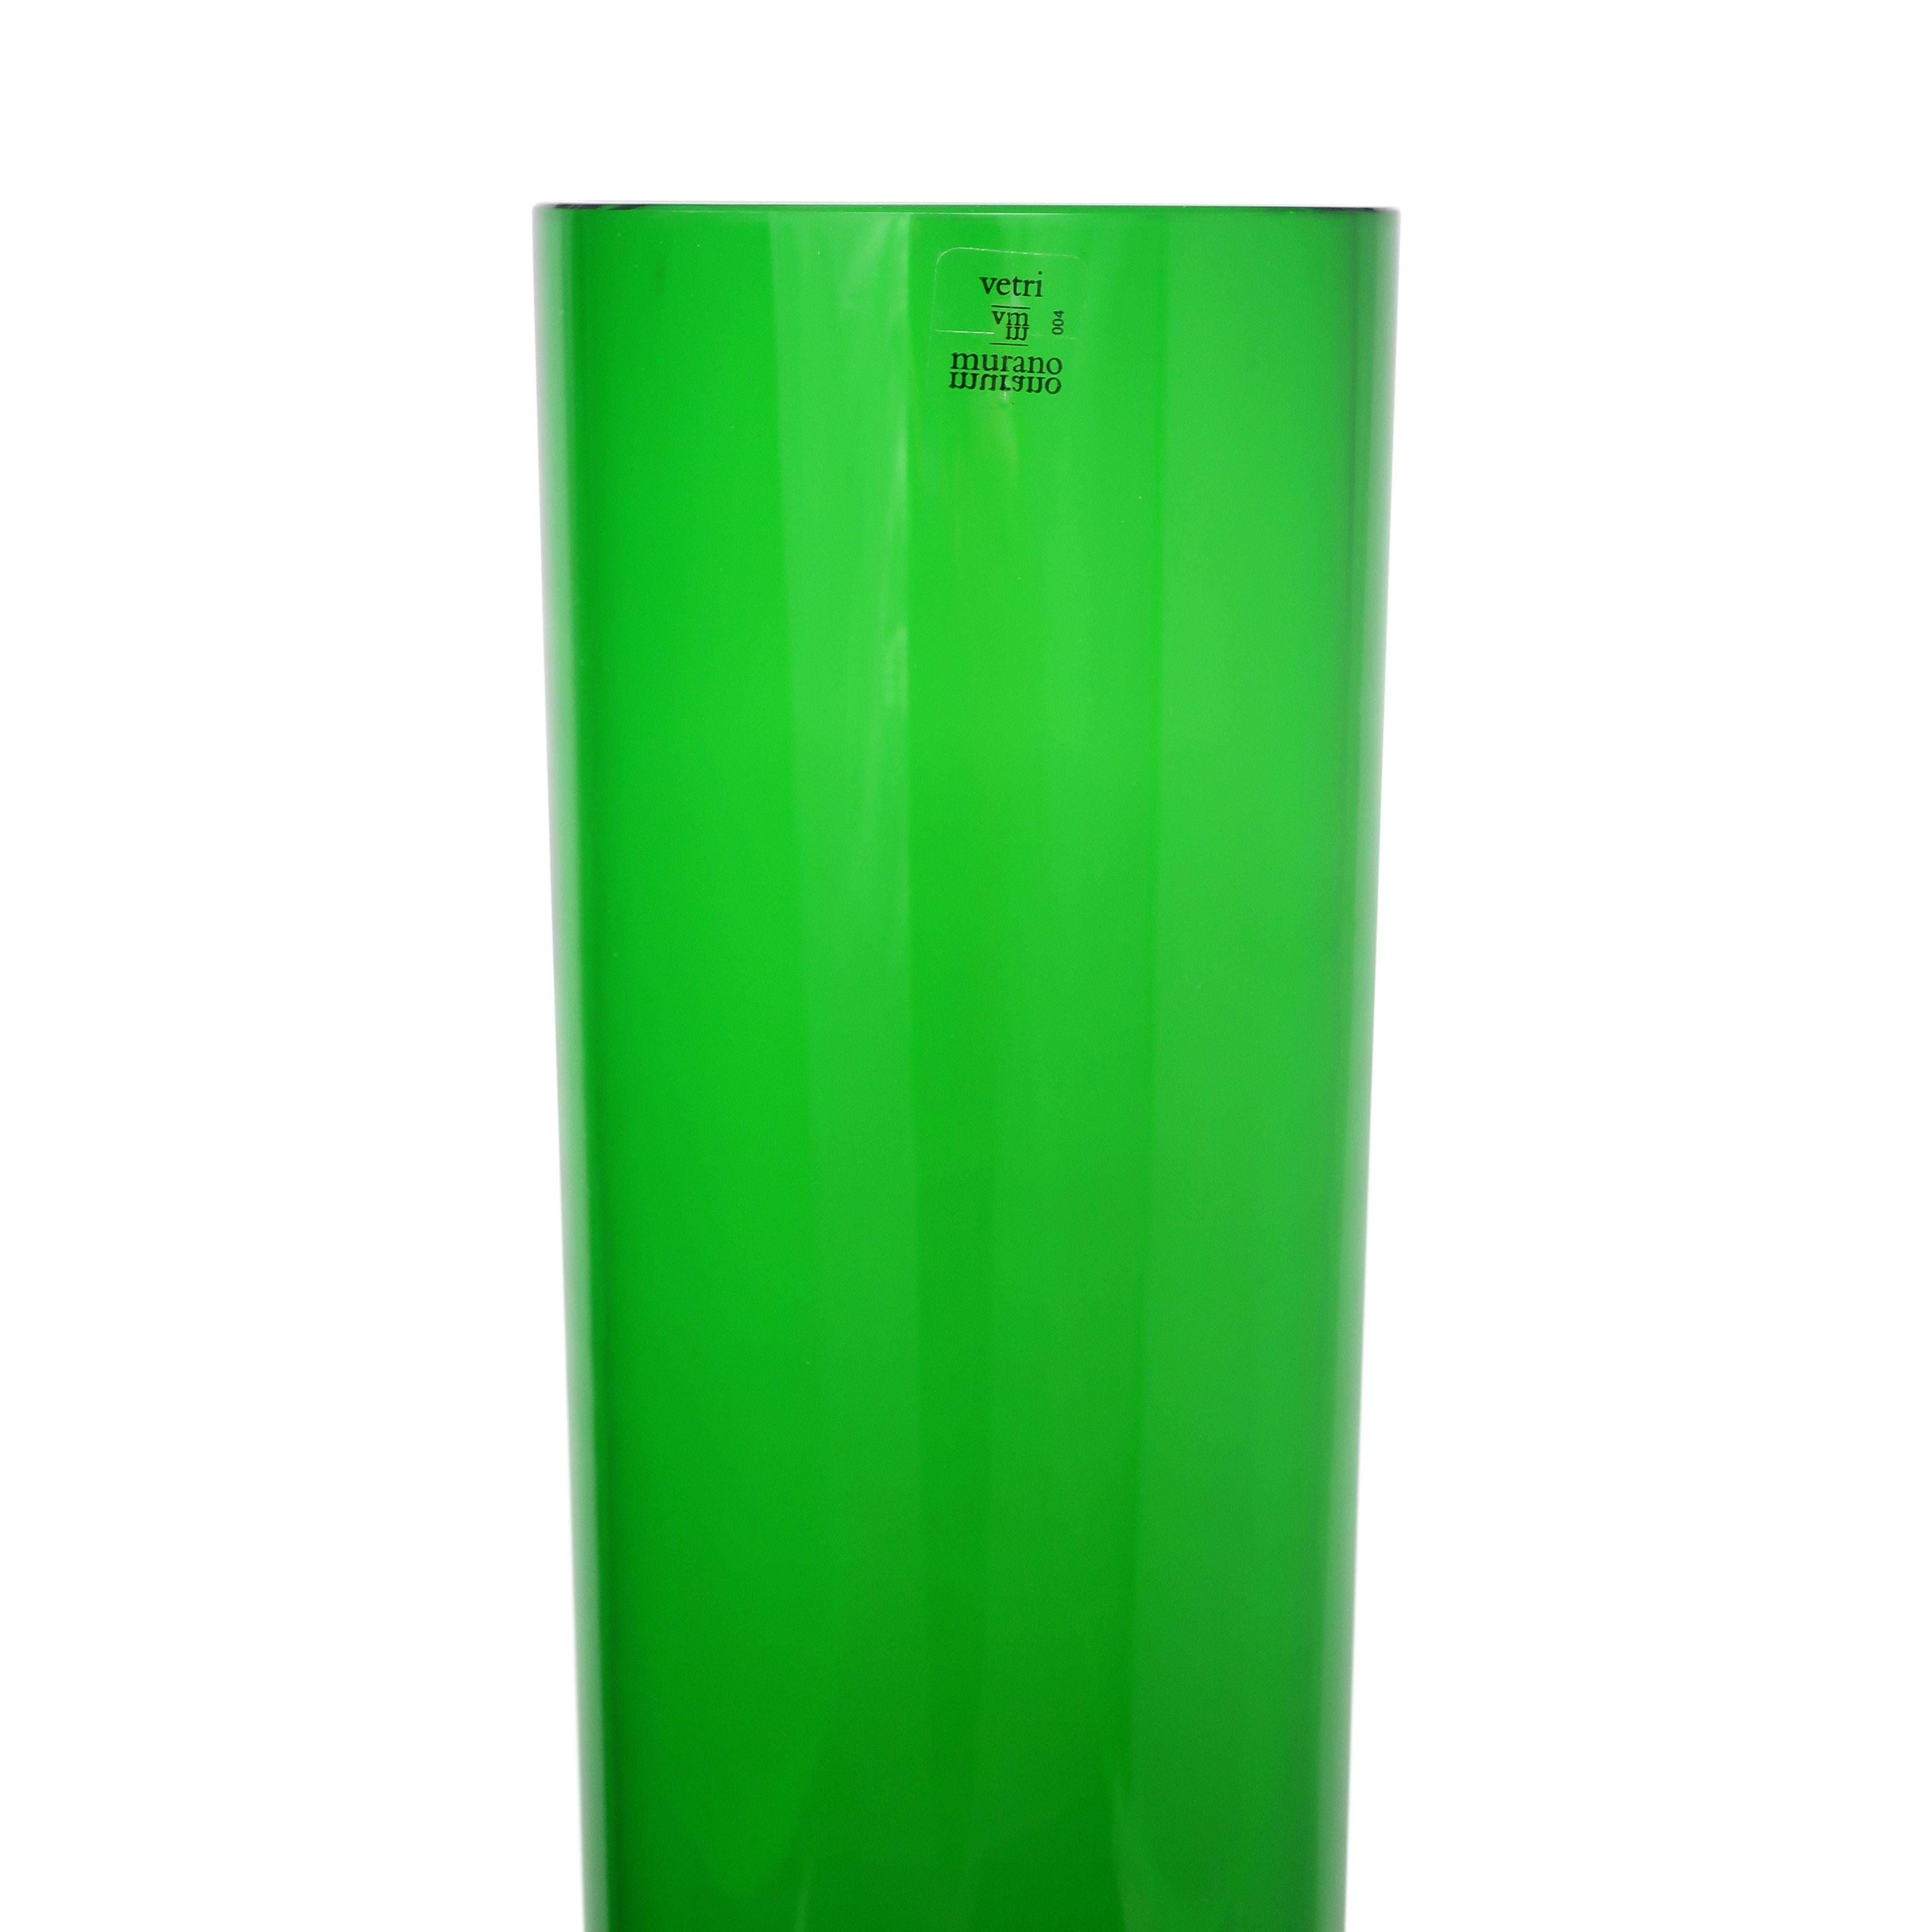 Jasper Morrison for Cappellini Large Green Glass Vase 2